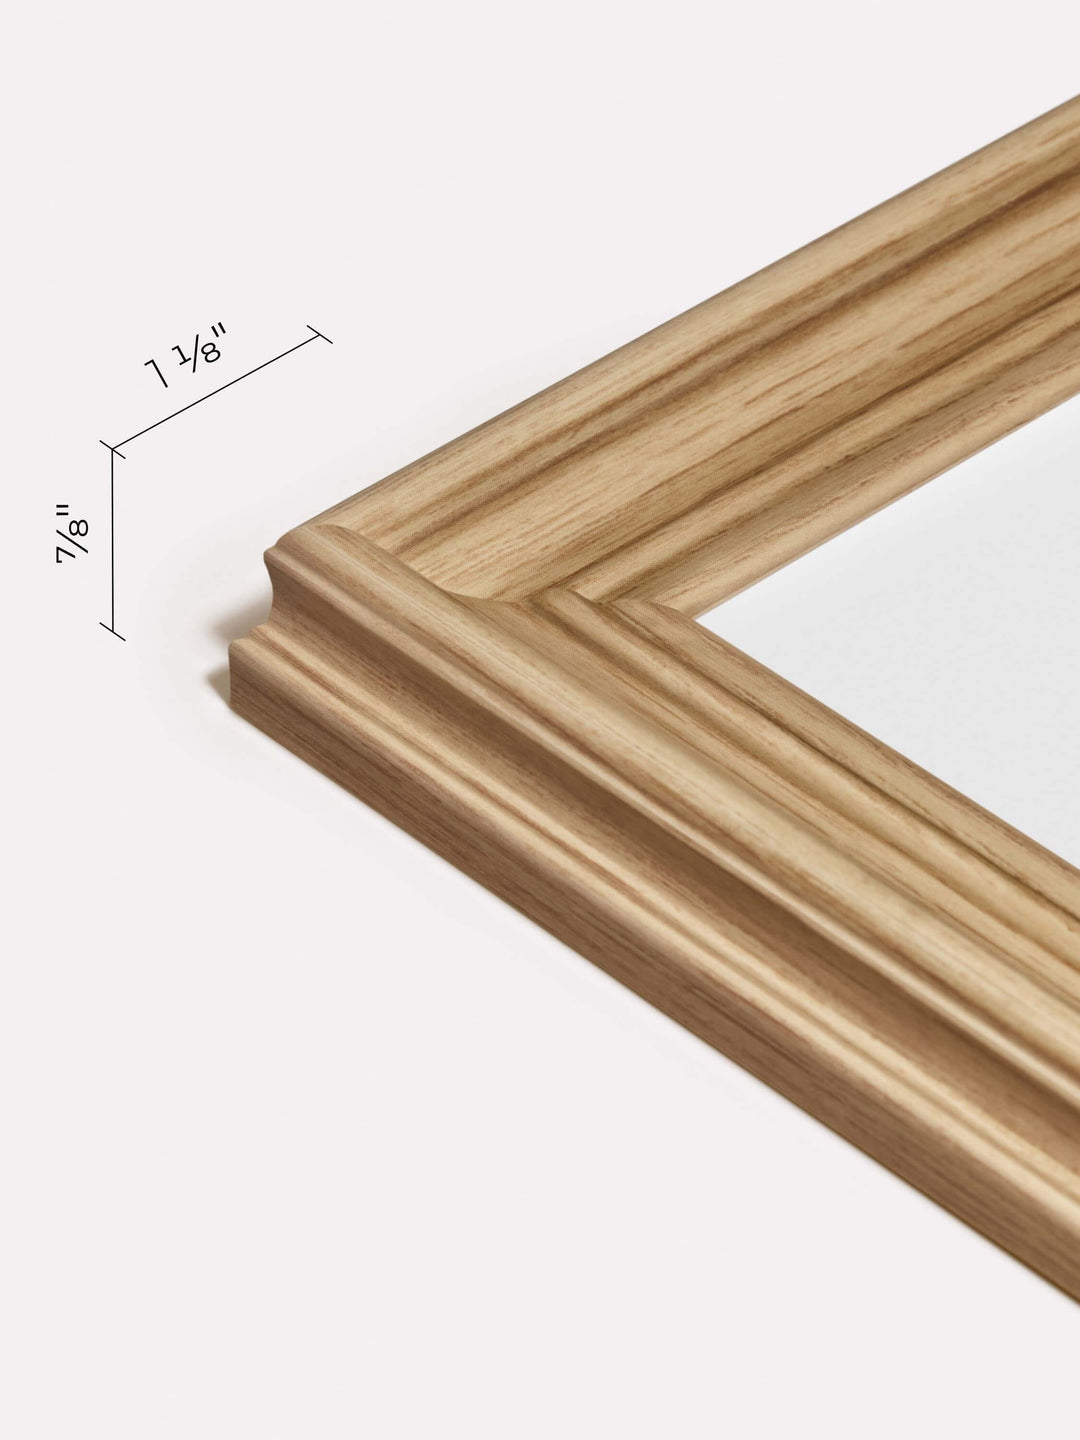 11x14-inch Decorative Frame, Oak - Close-up view